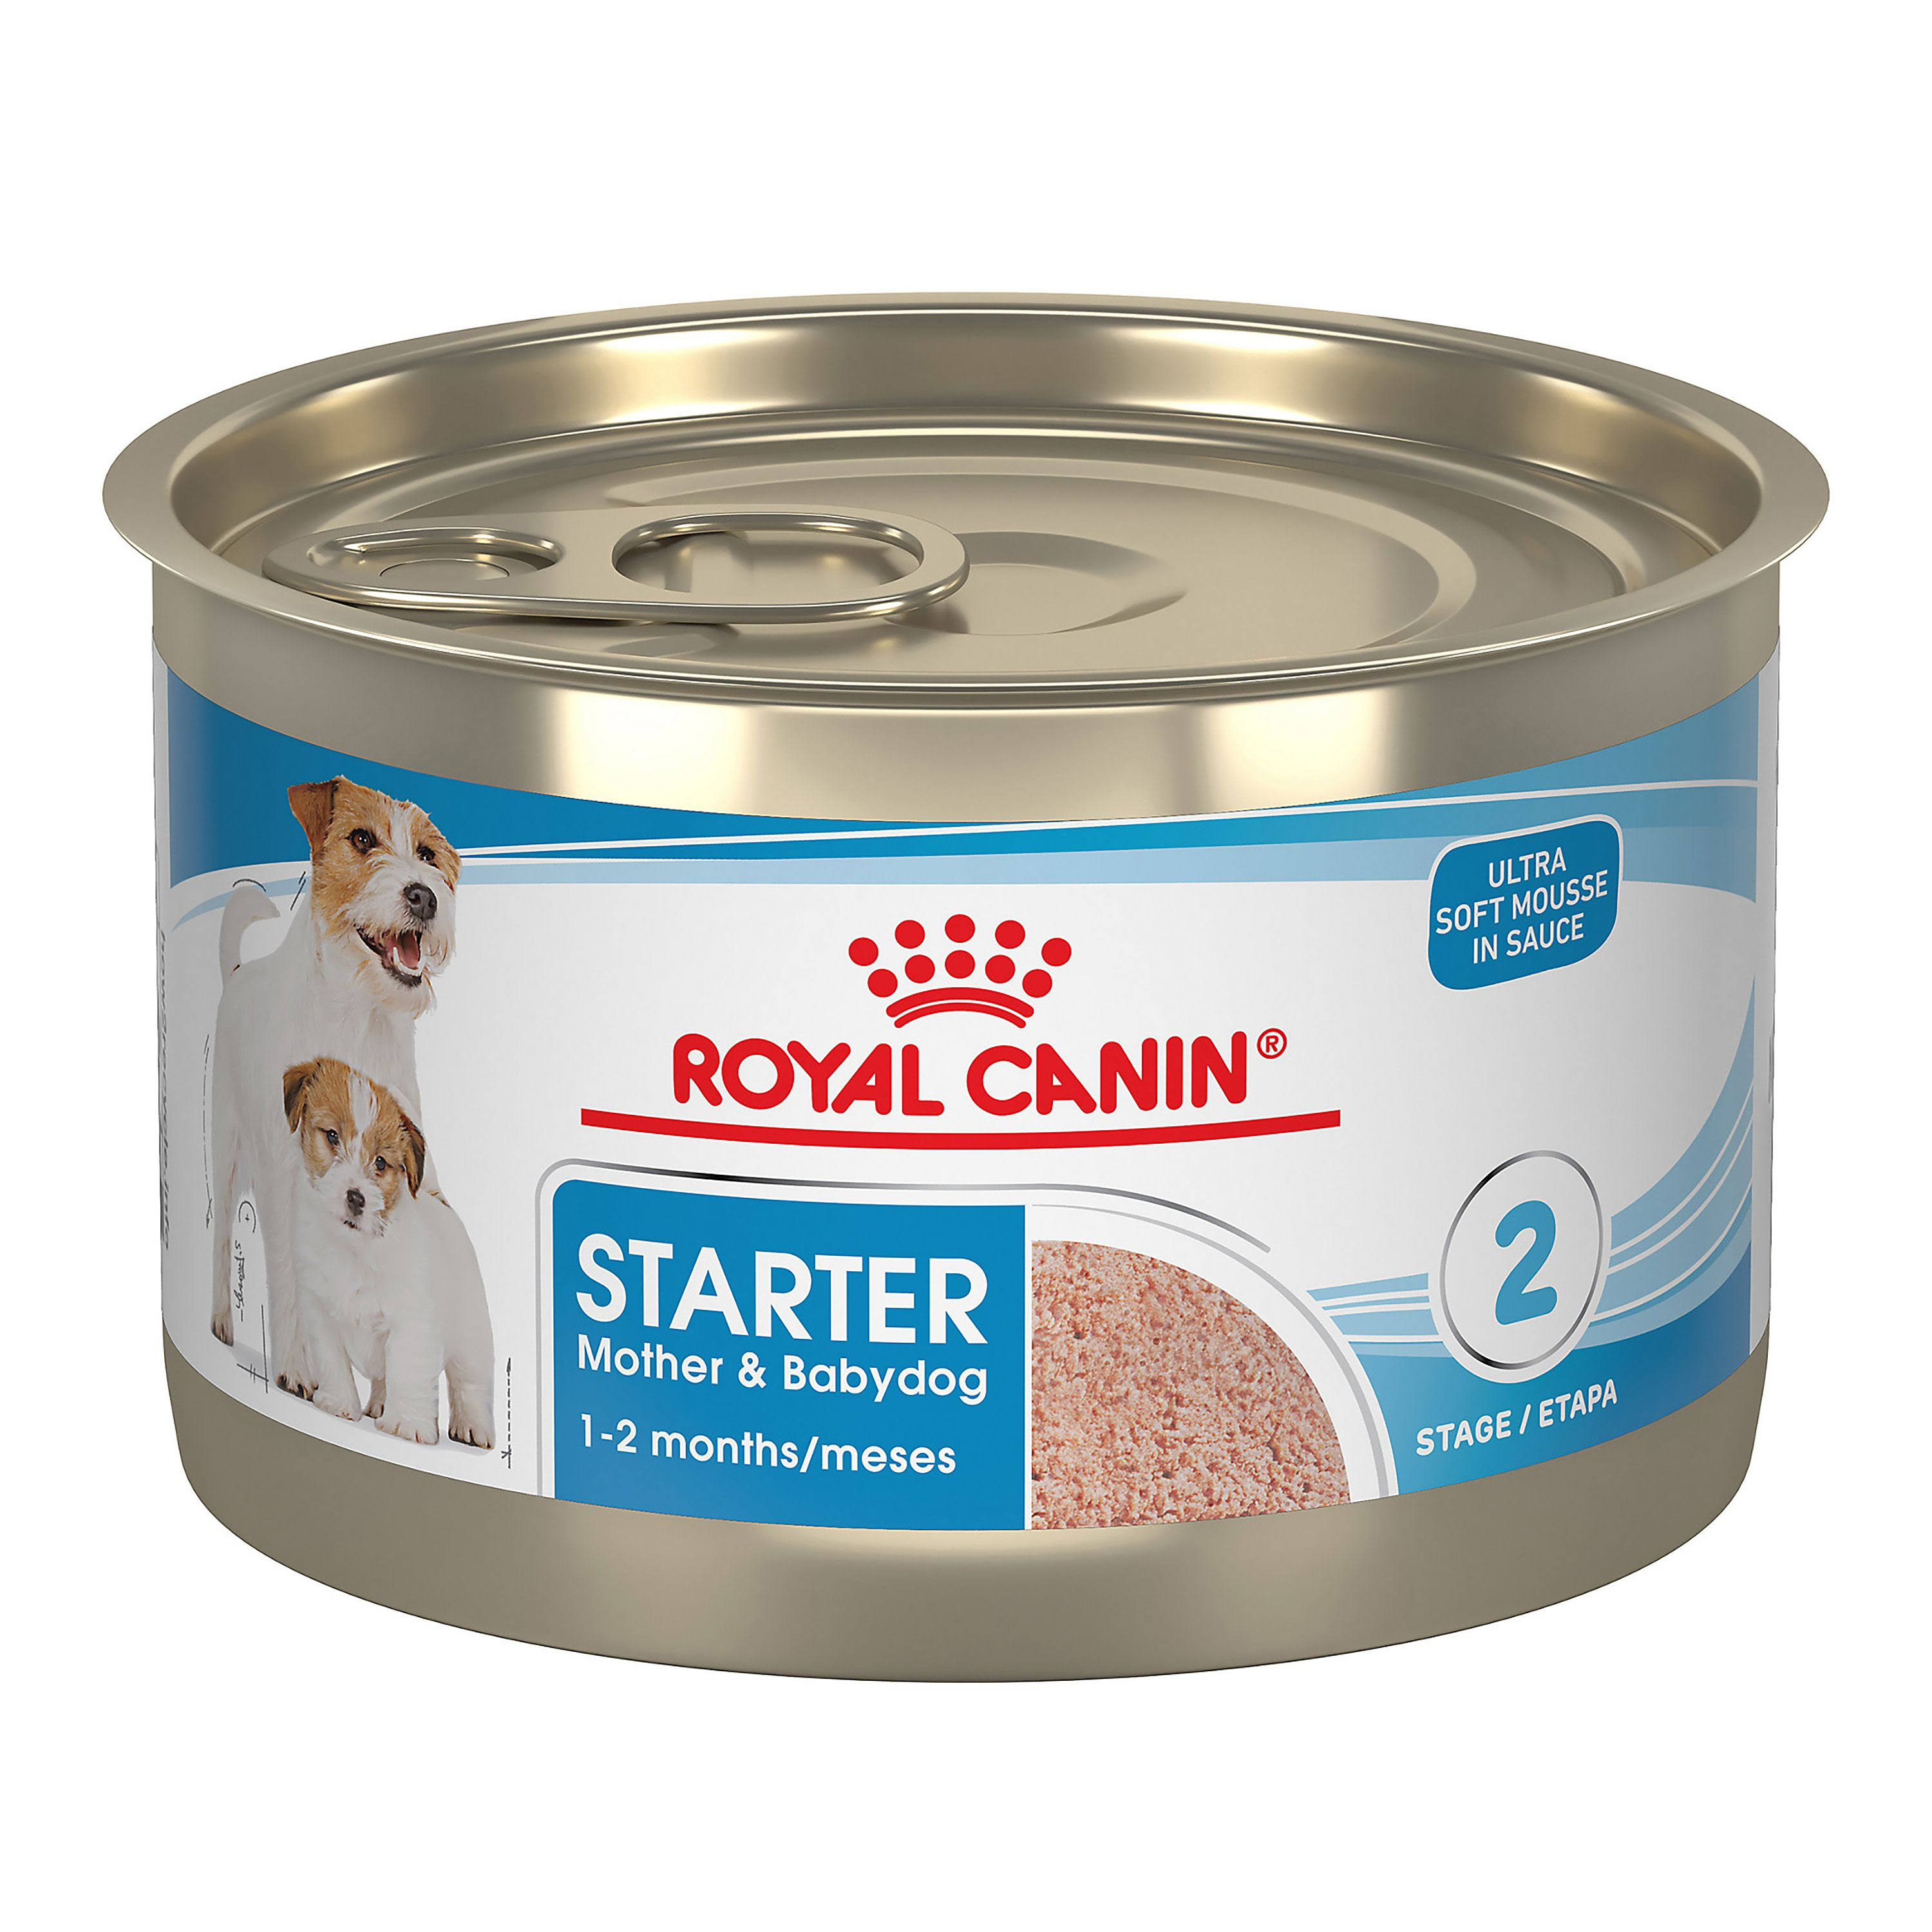 Royal Canin Starter Mousse in Sauce Mother & Babydog Dog Food - 5.1 oz